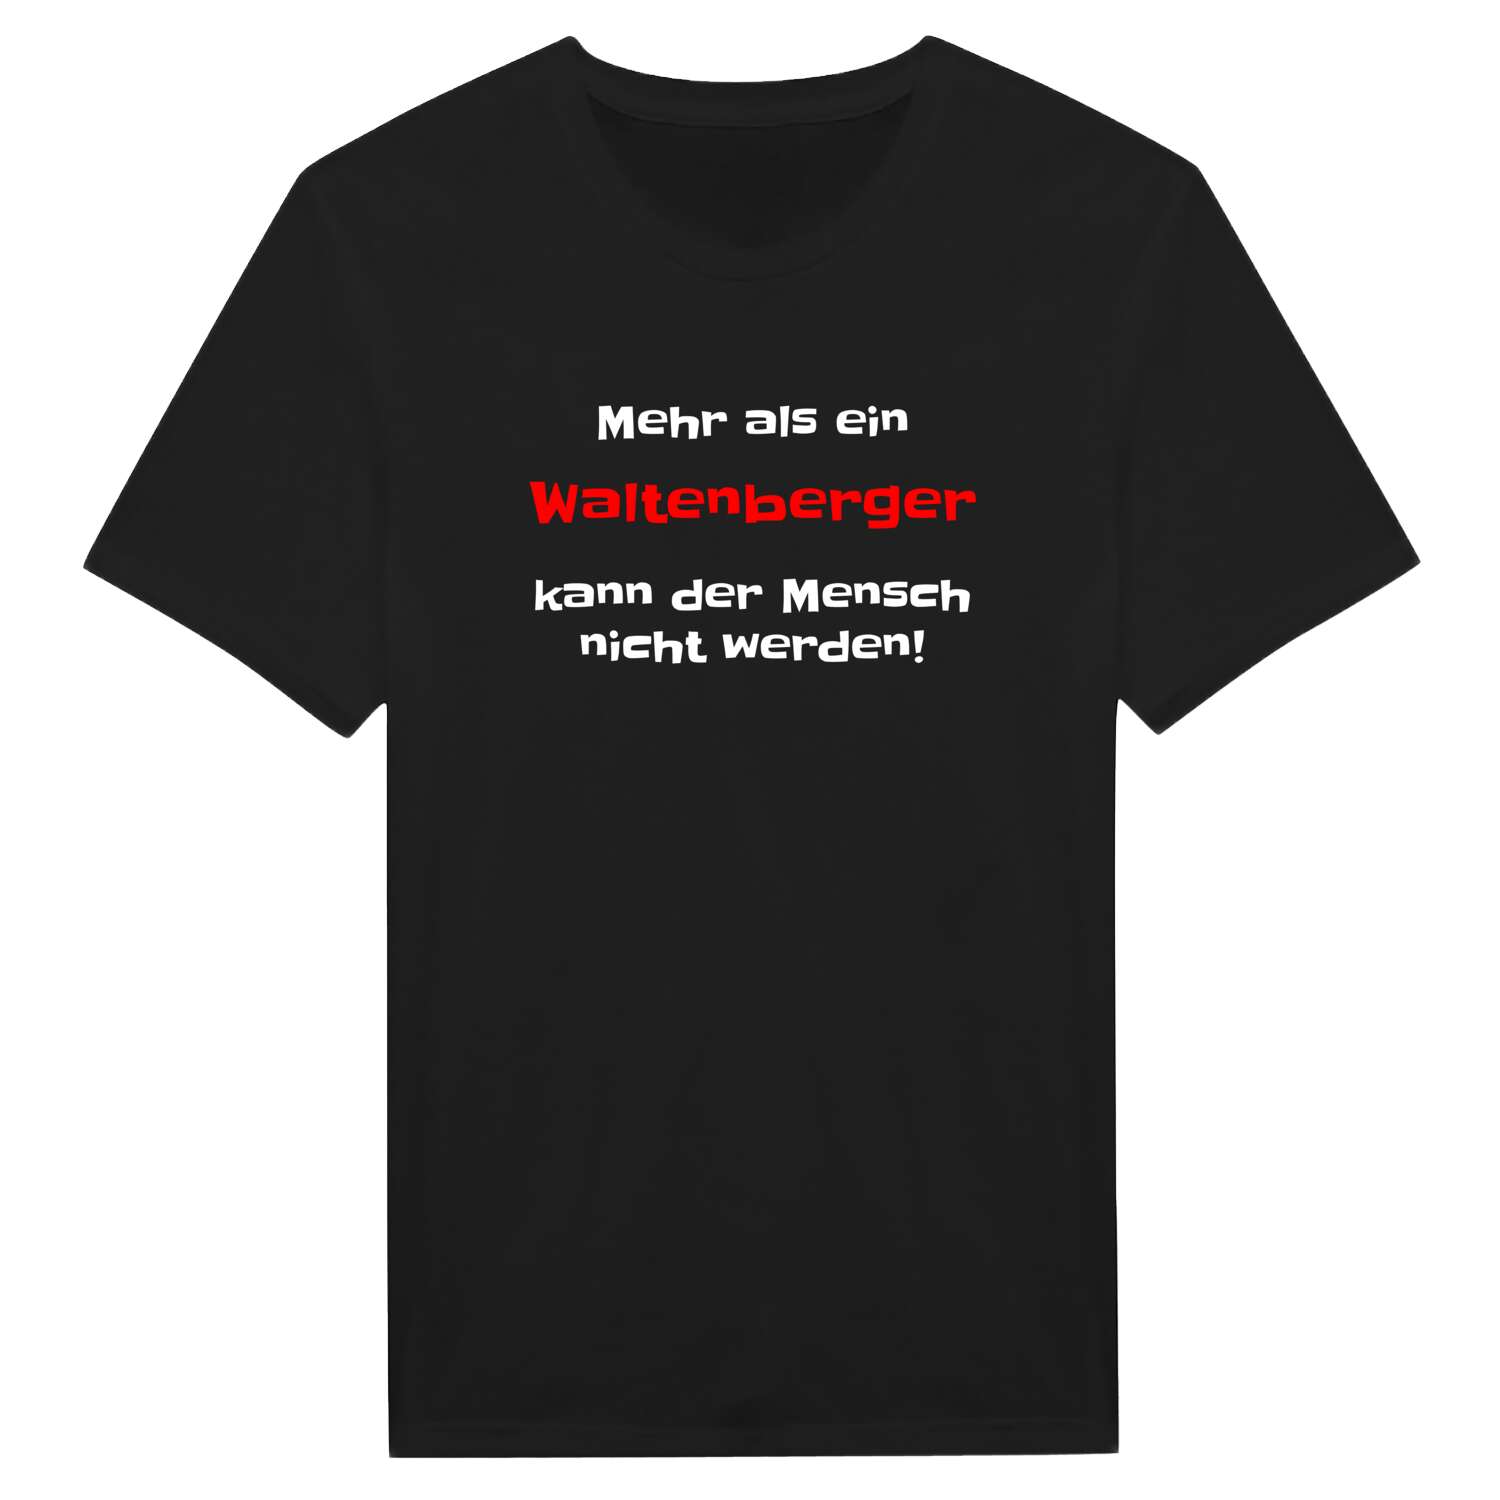 Waltenberg T-Shirt »Mehr als ein«